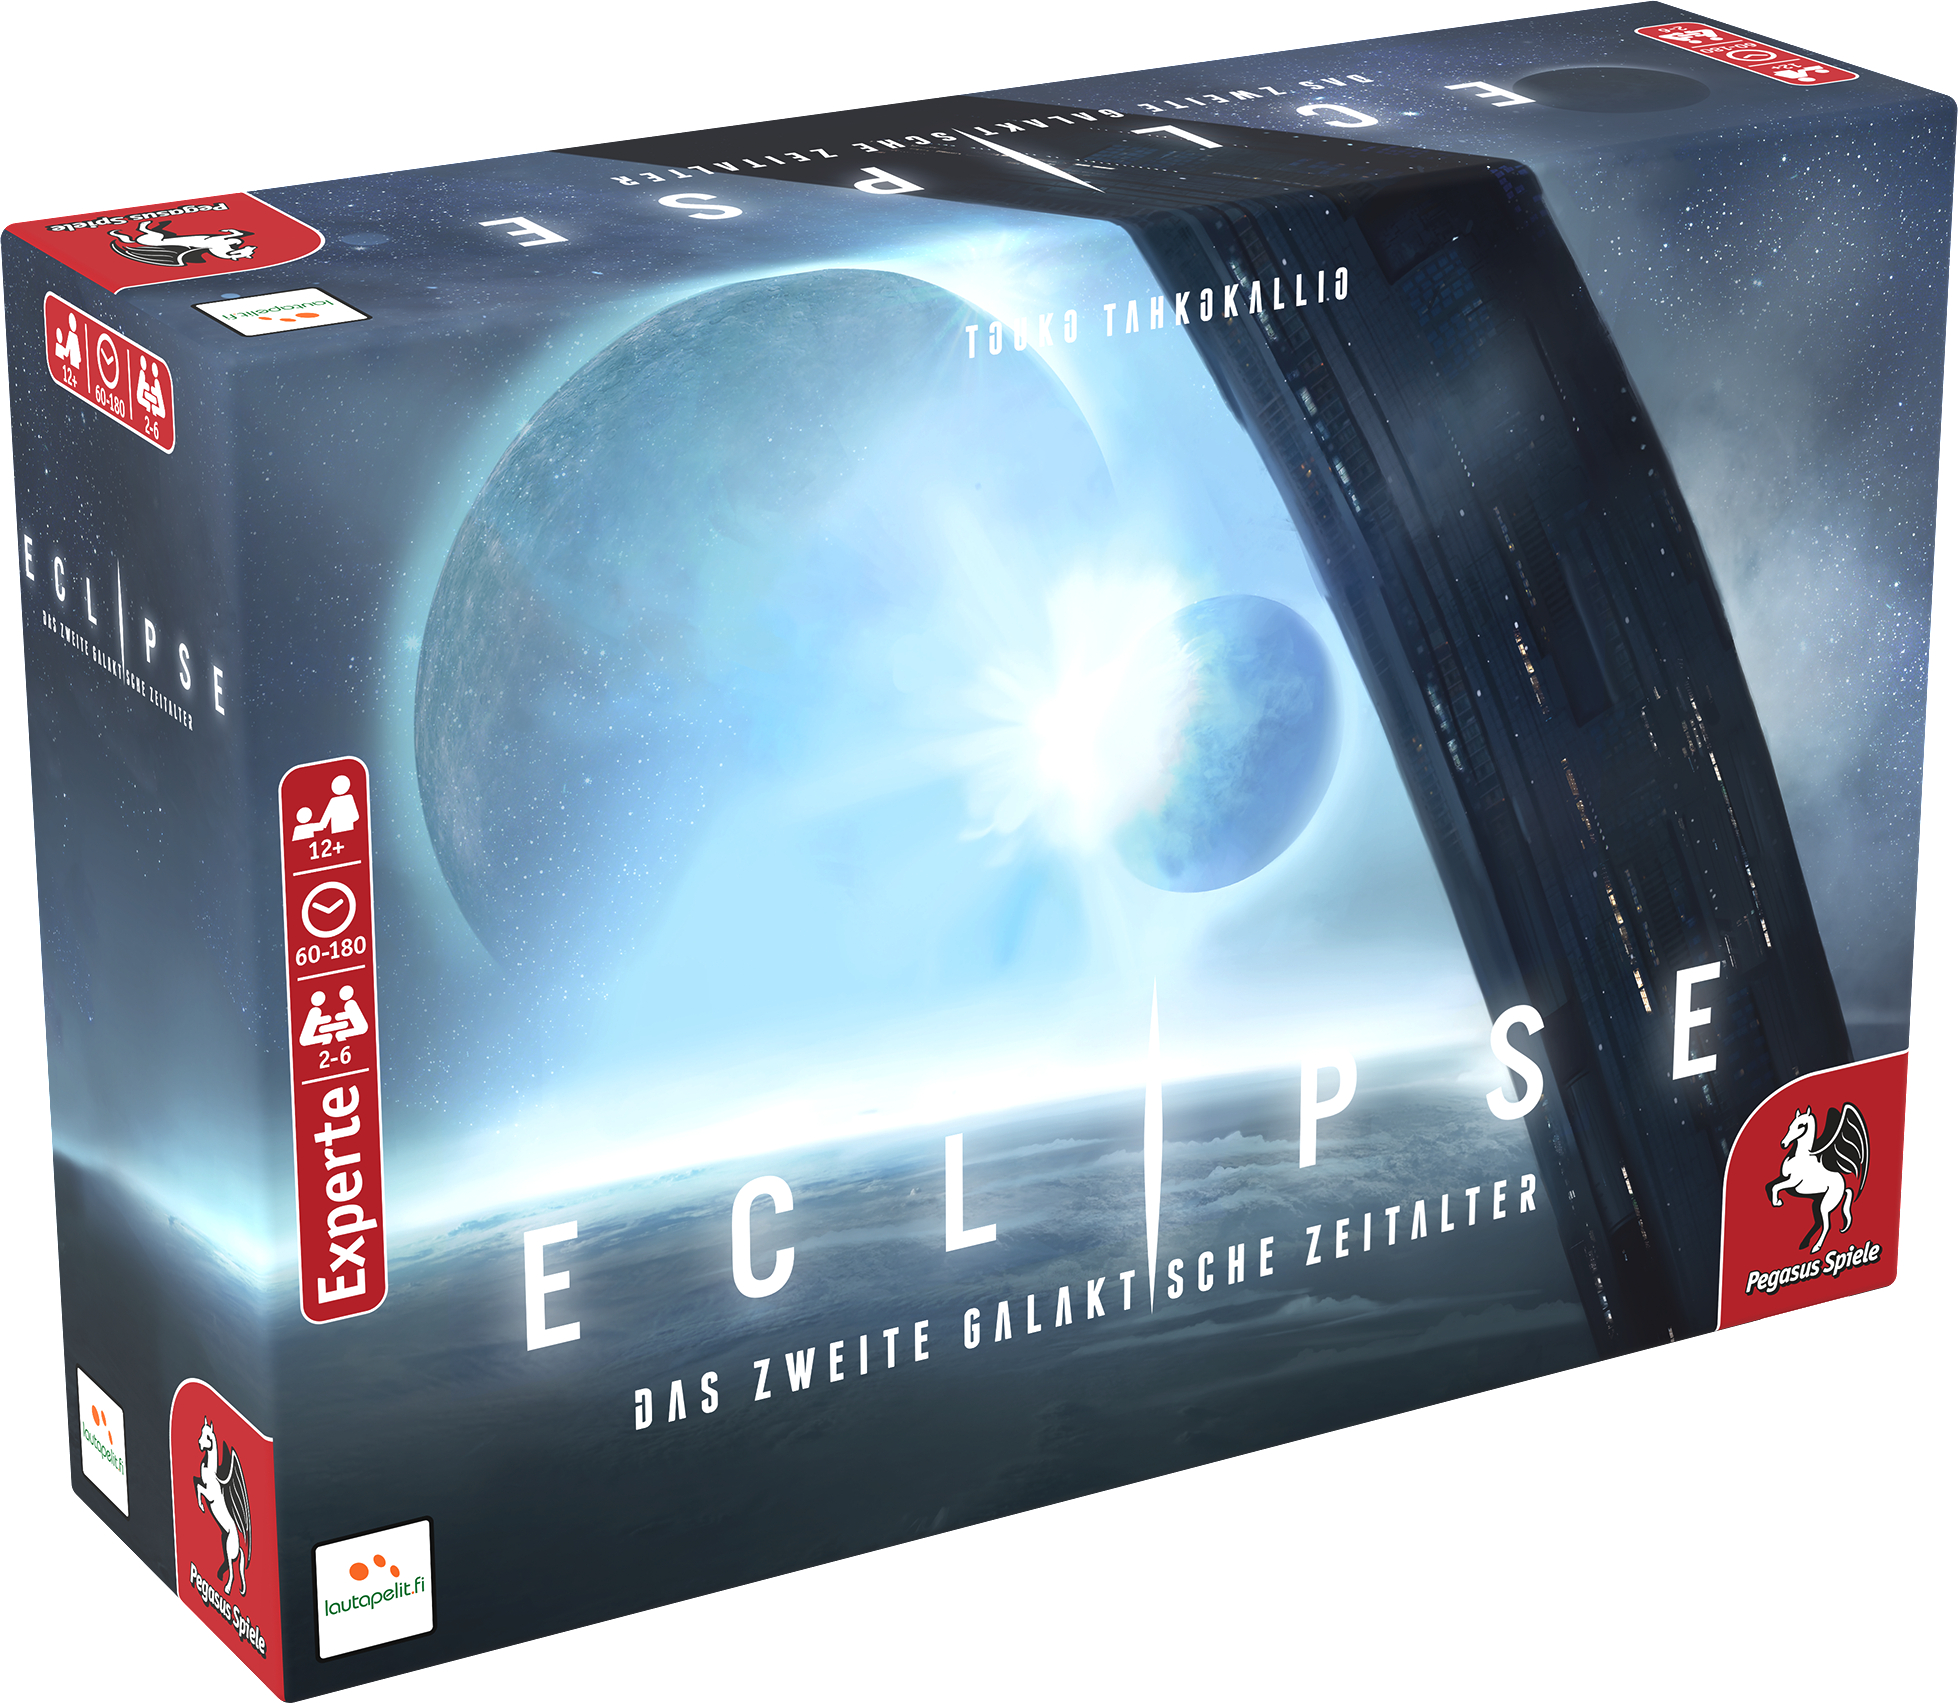 – SPIELE galaktische Mehrfarbig Zeitalter Das Eclipse PEGASUS zweite (Lautapelit) Brettspiel